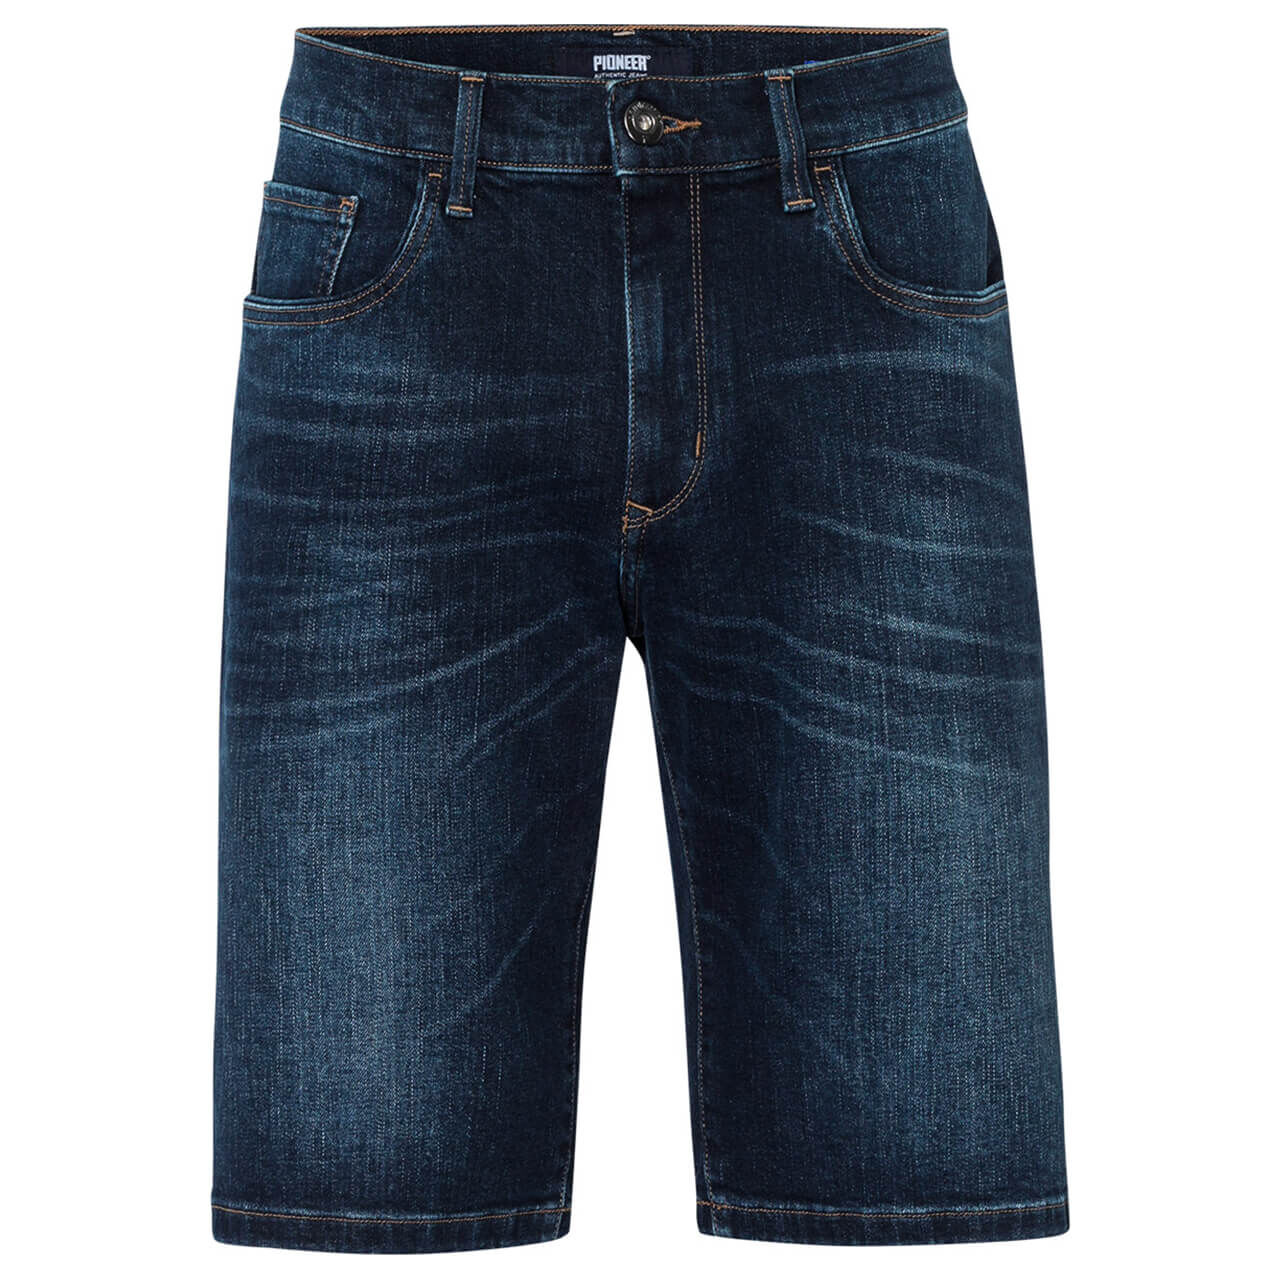 Pioneer Jeans Lenn Bermuda für Herren in Dunkelblau angewaschen, FarbNr.: 6816